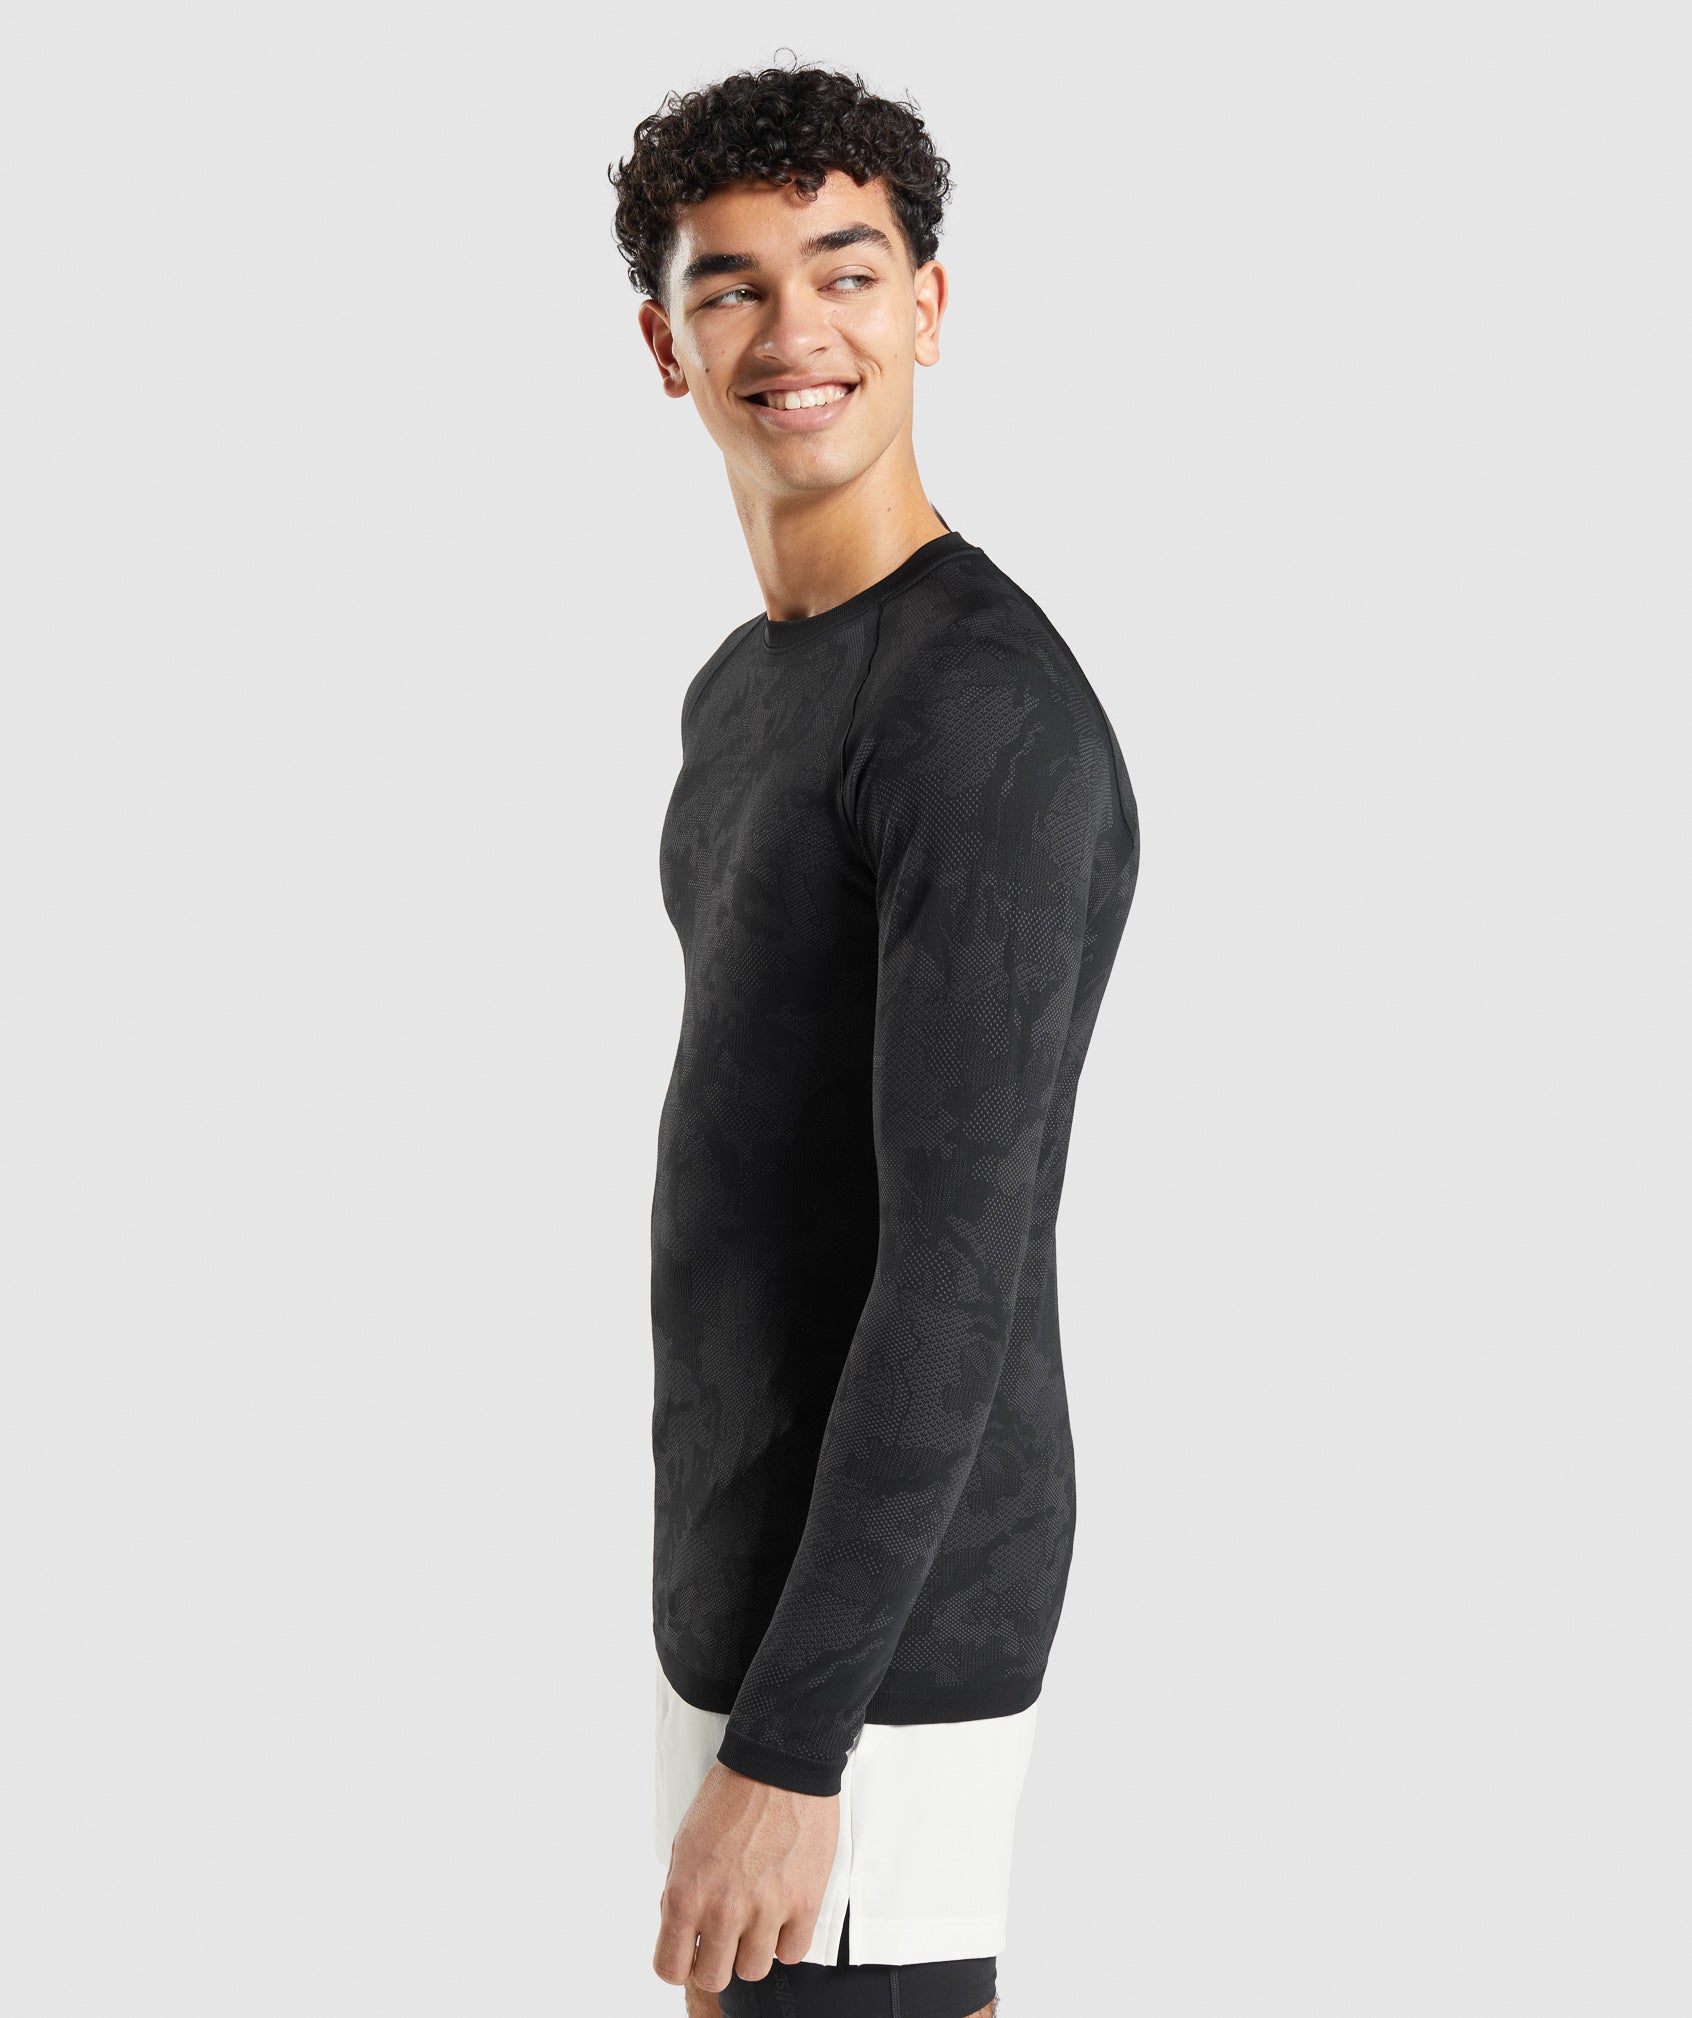 Gymshark//Steve Cook Long Sleeve Seamless T-Shirt - Black/Graphite